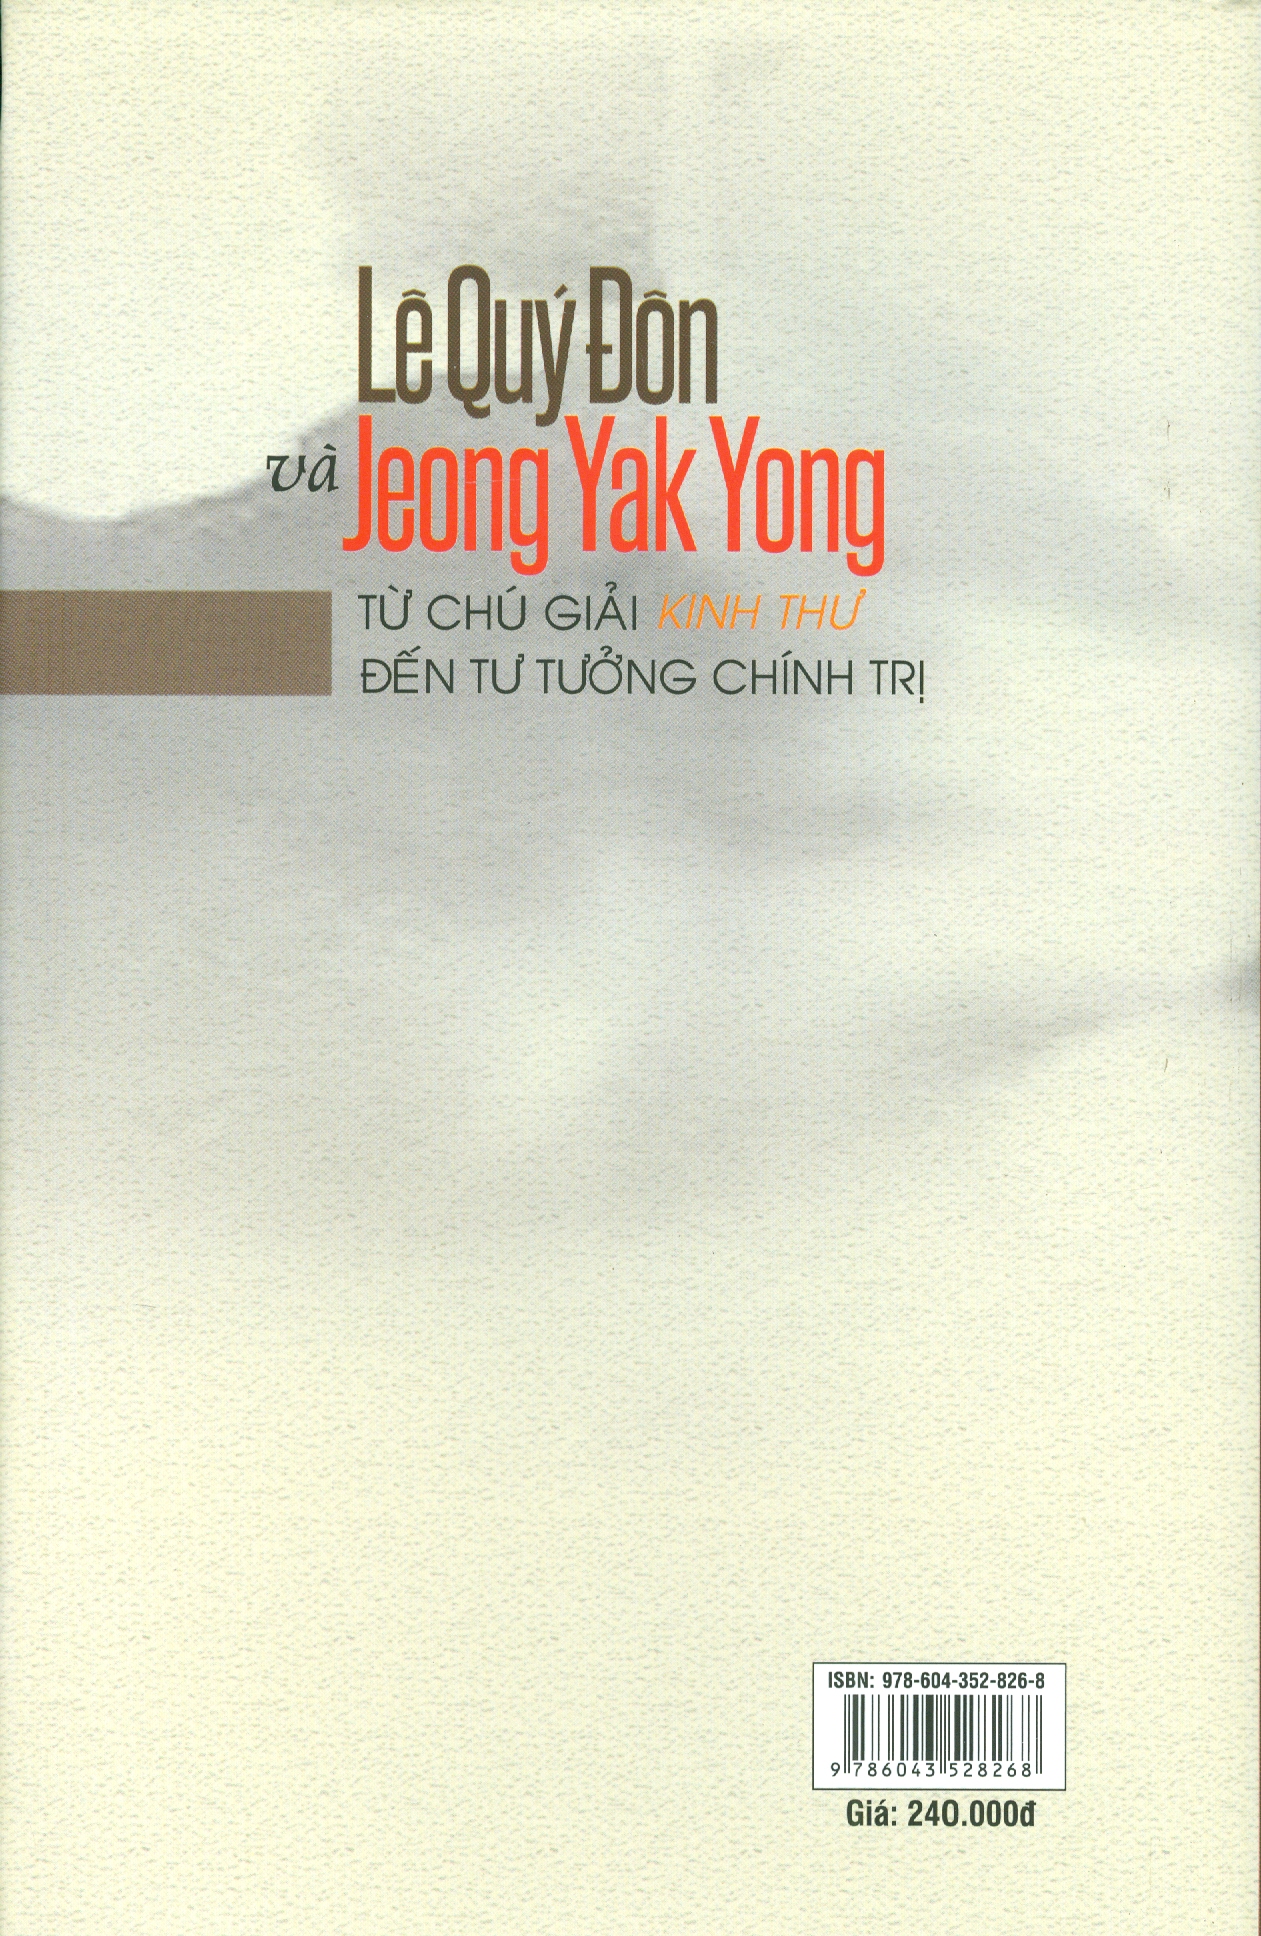 Lê Quý Đôn Và Jeong Yak Yong Từ Chú Giải Kinh Thư Đến Tư Tưởng Chính Trị (Bìa cứng)